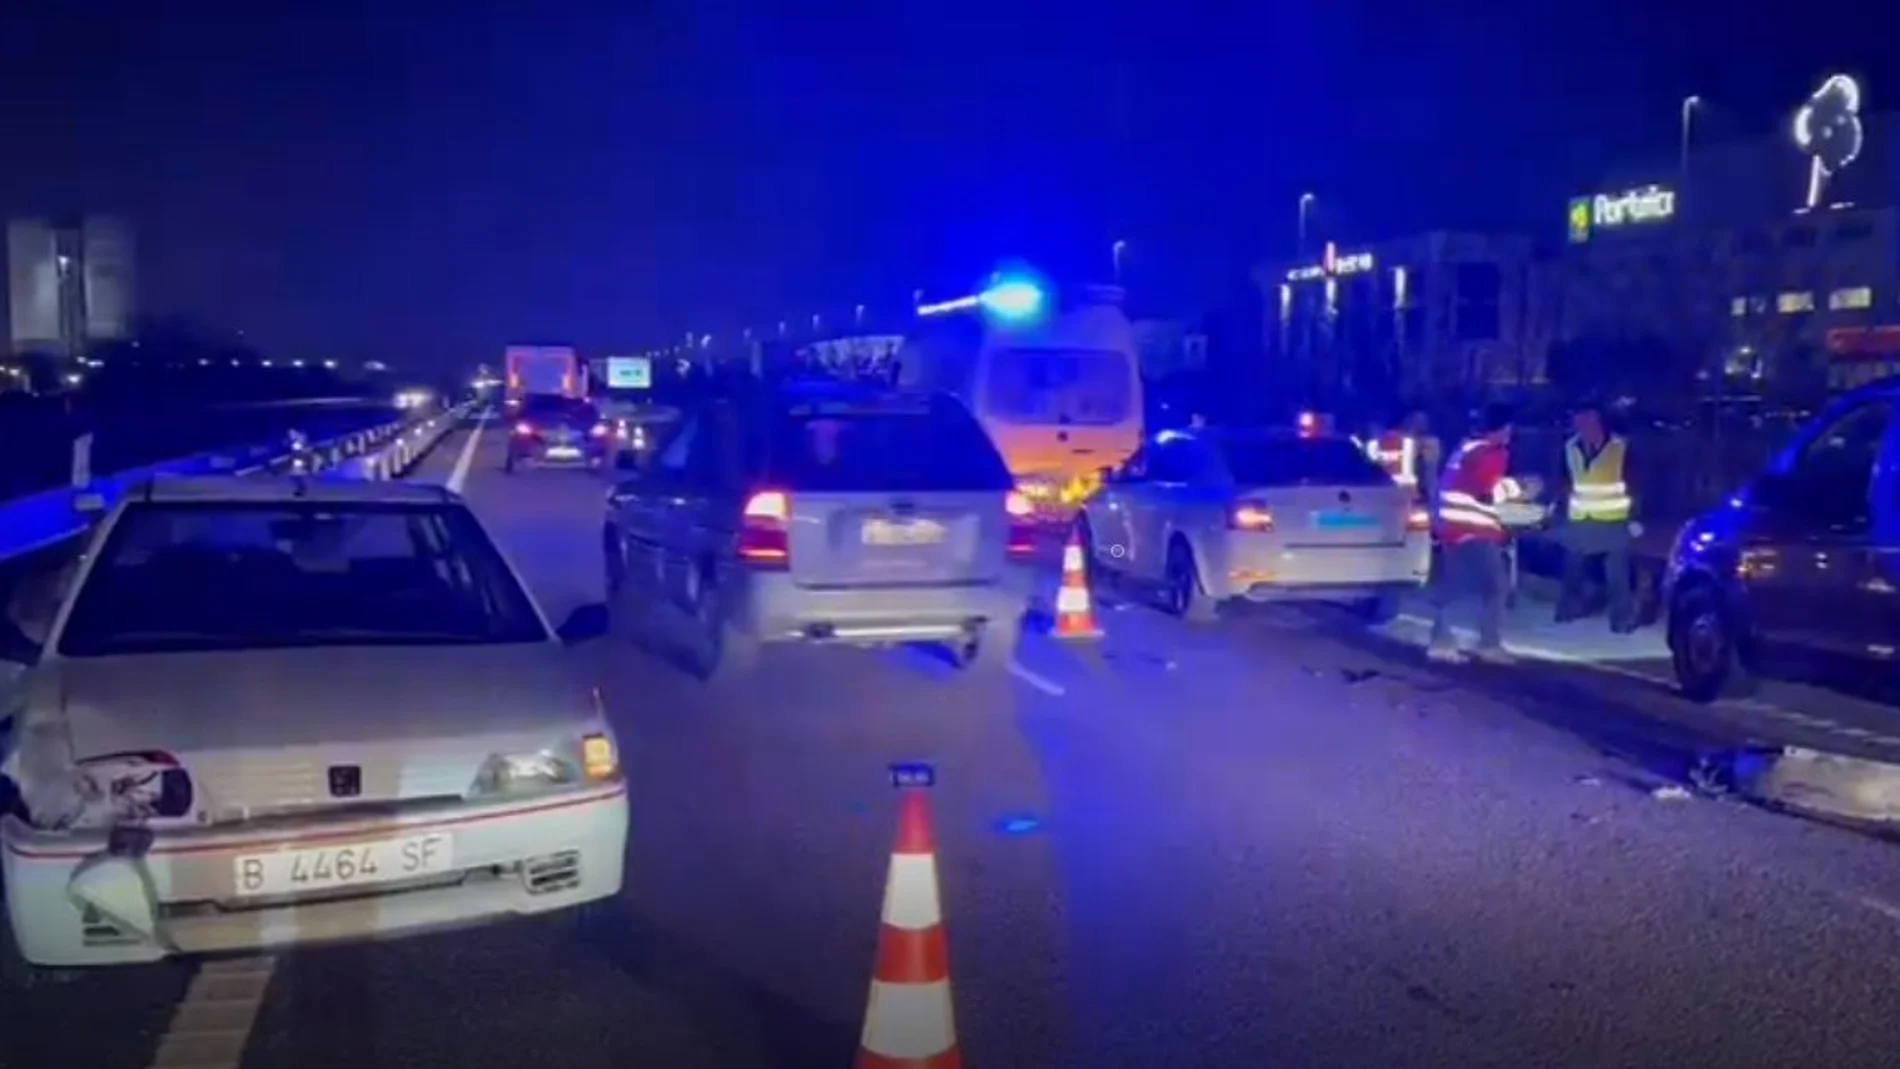 Muere una persona tras colisionar dos vehículos en la A-55 en O Porriño (Pontevedra)